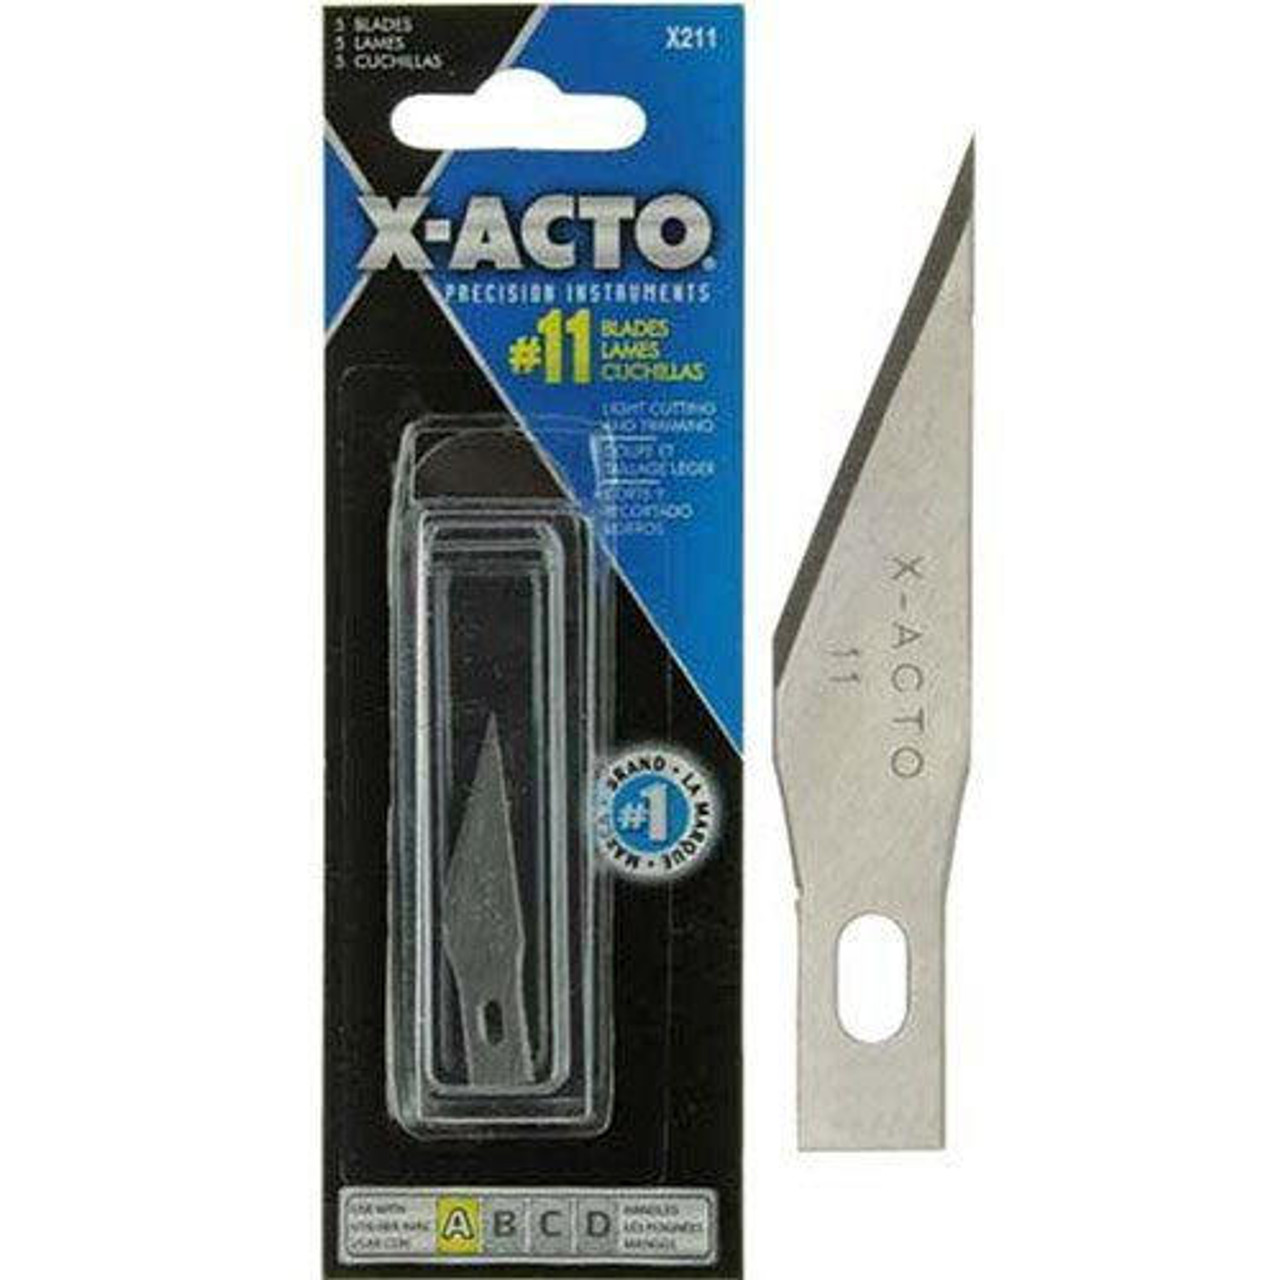 Xacto blades, 100 count